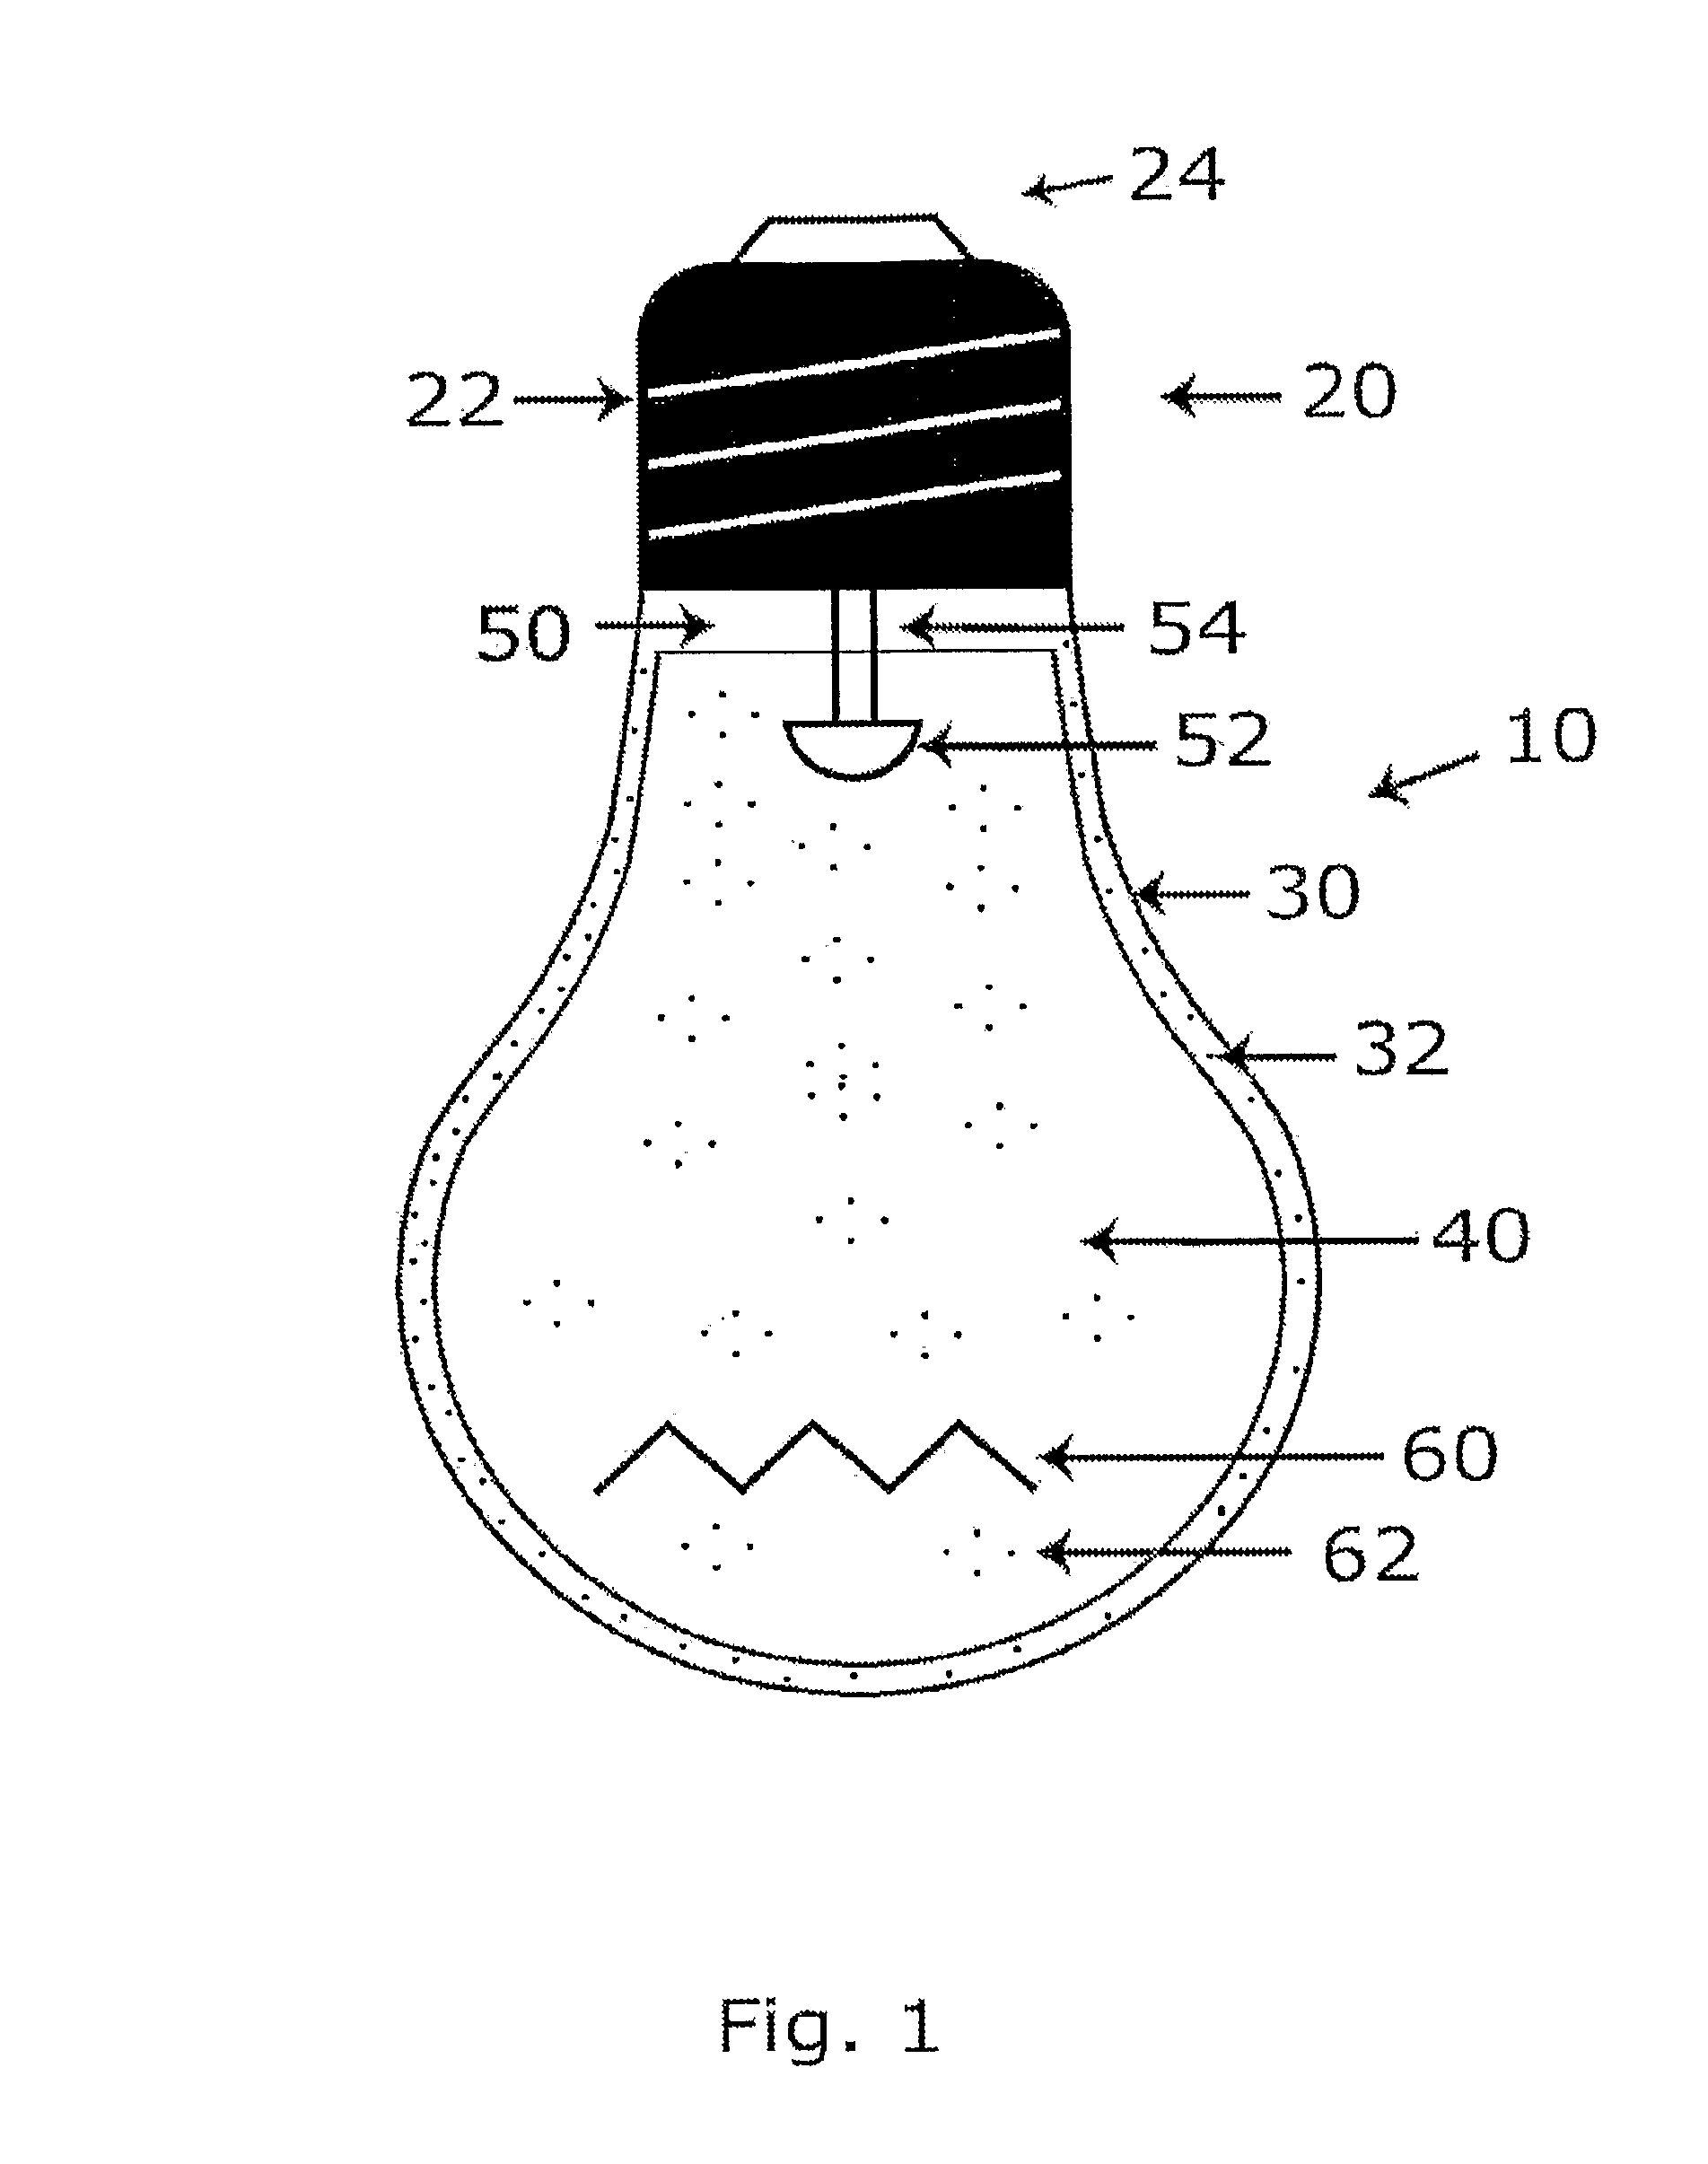 Plastic LED bulb